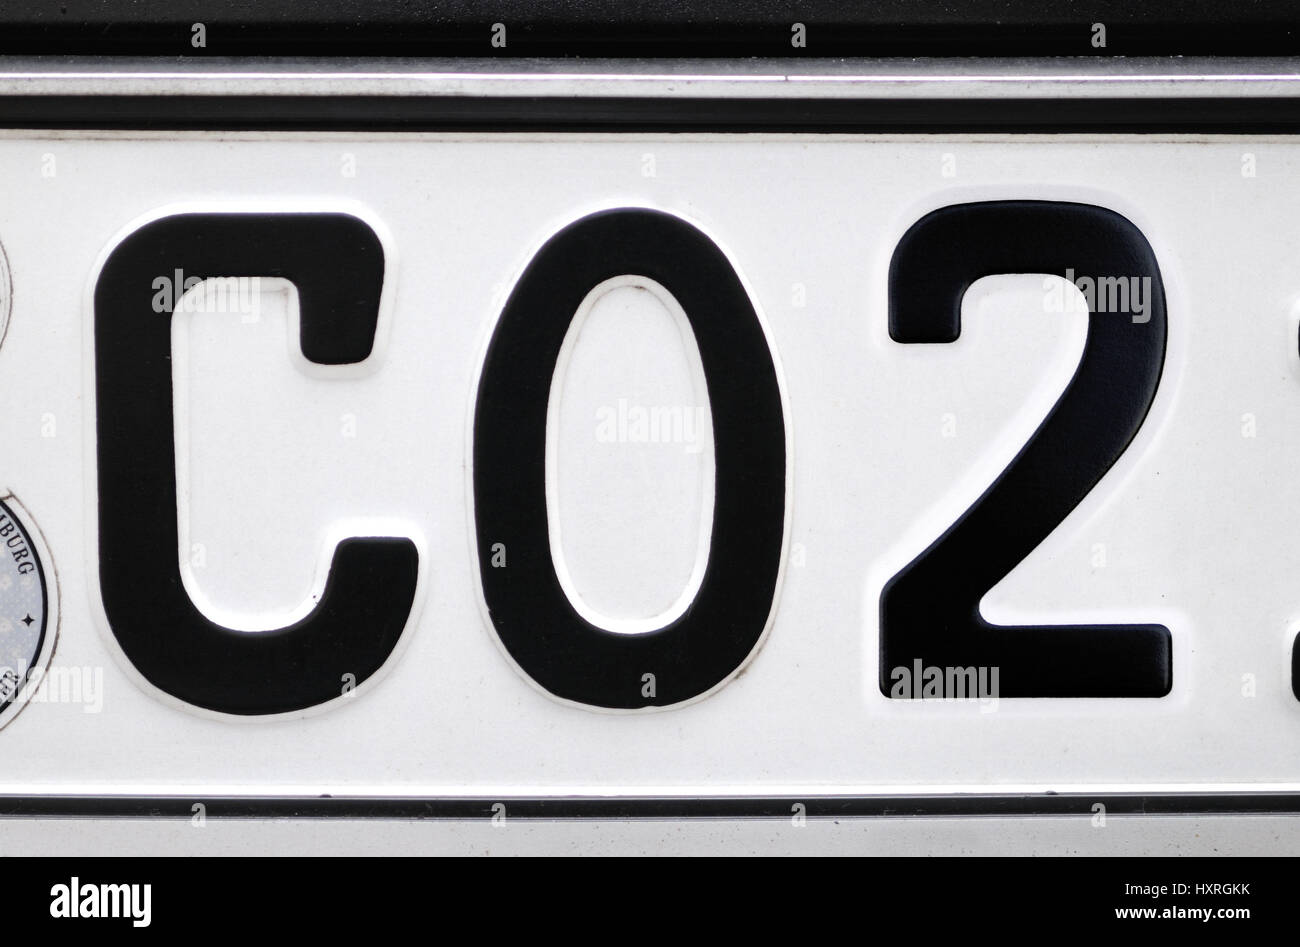 Car registration with the label CO2, Autokennzeichen mit der Aufschrift CO2  Stock Photo - Alamy